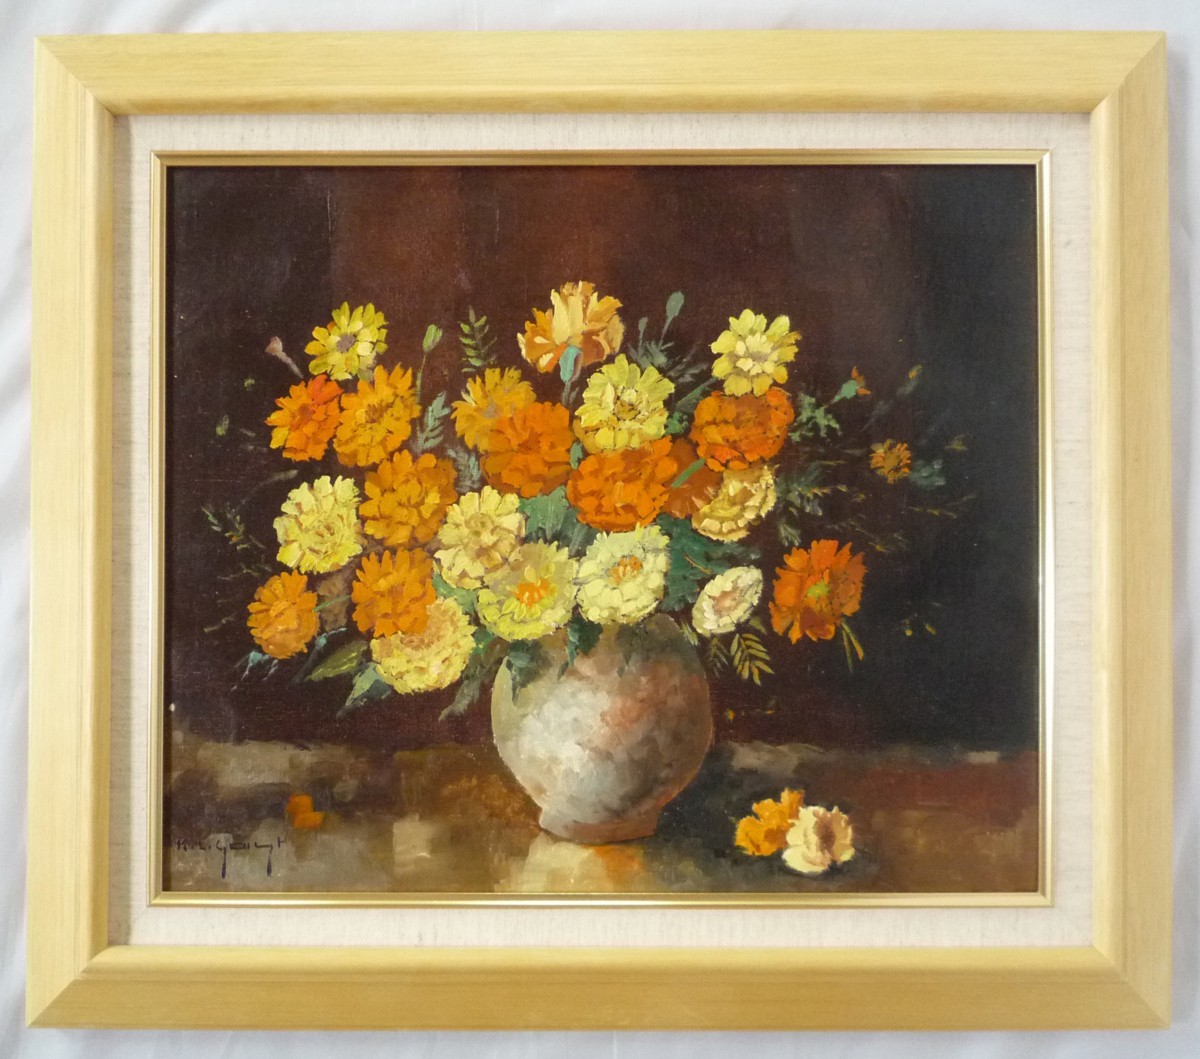 Europäische Malerei, handgemaltes Ölgemälde, F8 Größe, Blumen in einer Vase von Gust, 1 + neuer Rahmen inklusive, Malerei, Ölgemälde, Stillleben